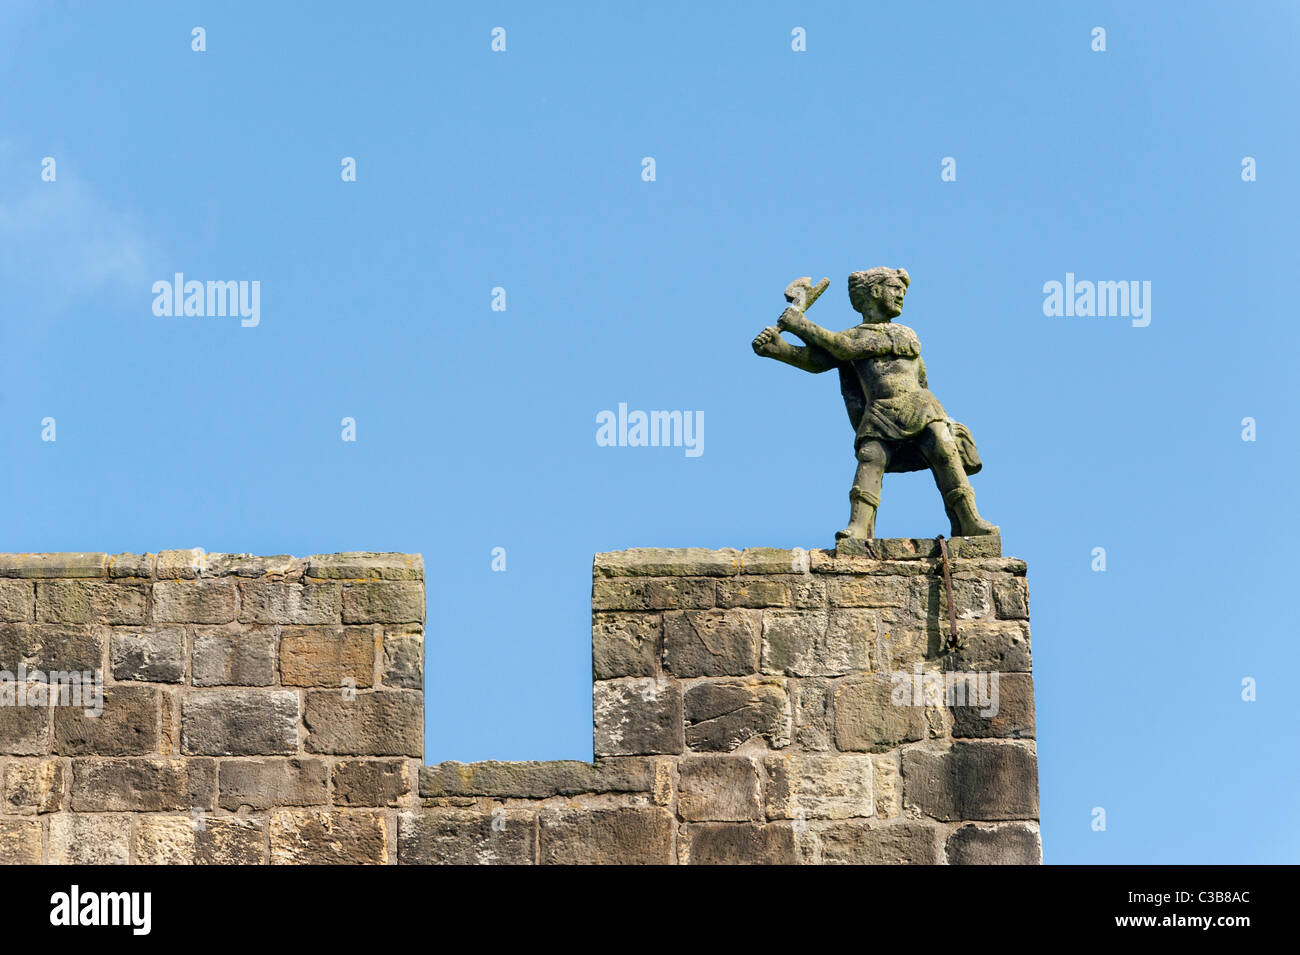 Dettaglio da Alnwick Castle Foto Stock